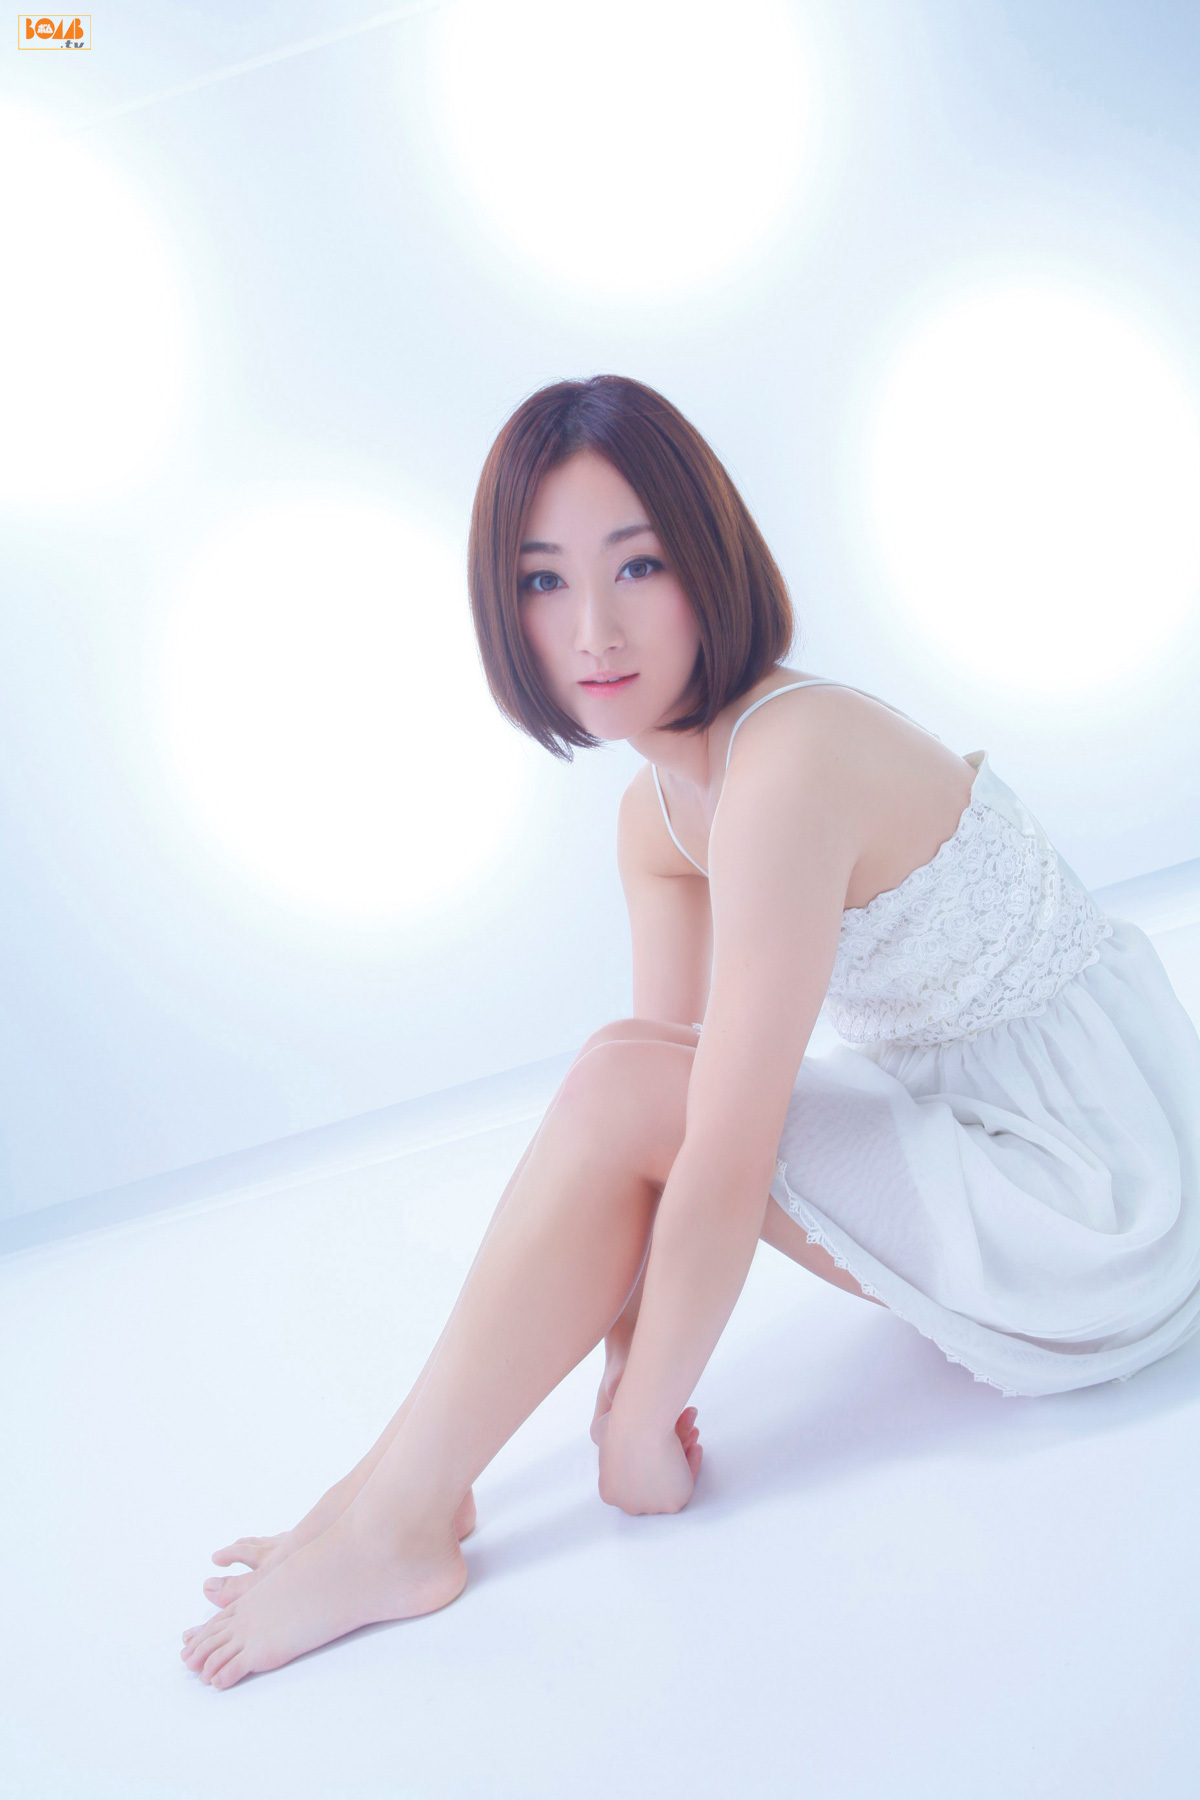 吉永美香 Yoshinaga-Mika [BOMB.TV] 20120101 美女图片